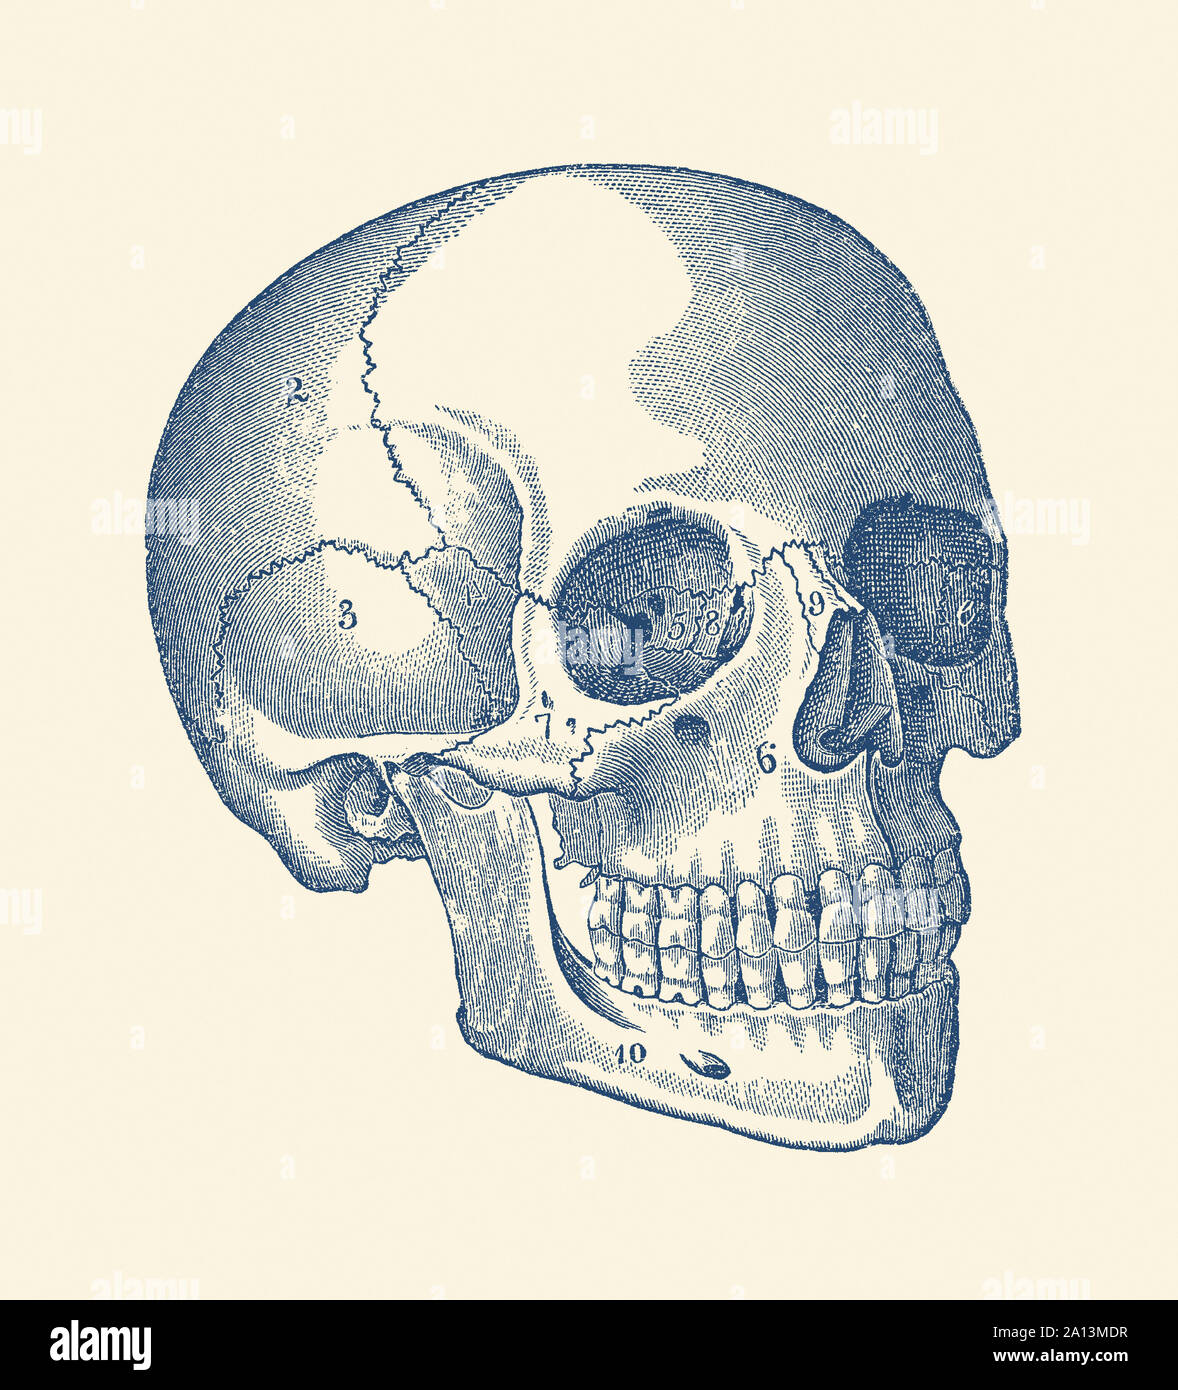 Anatomia Vintage funzioni di stampa il cranio di uno scheletro umano con ciascun osso marcato. Foto Stock